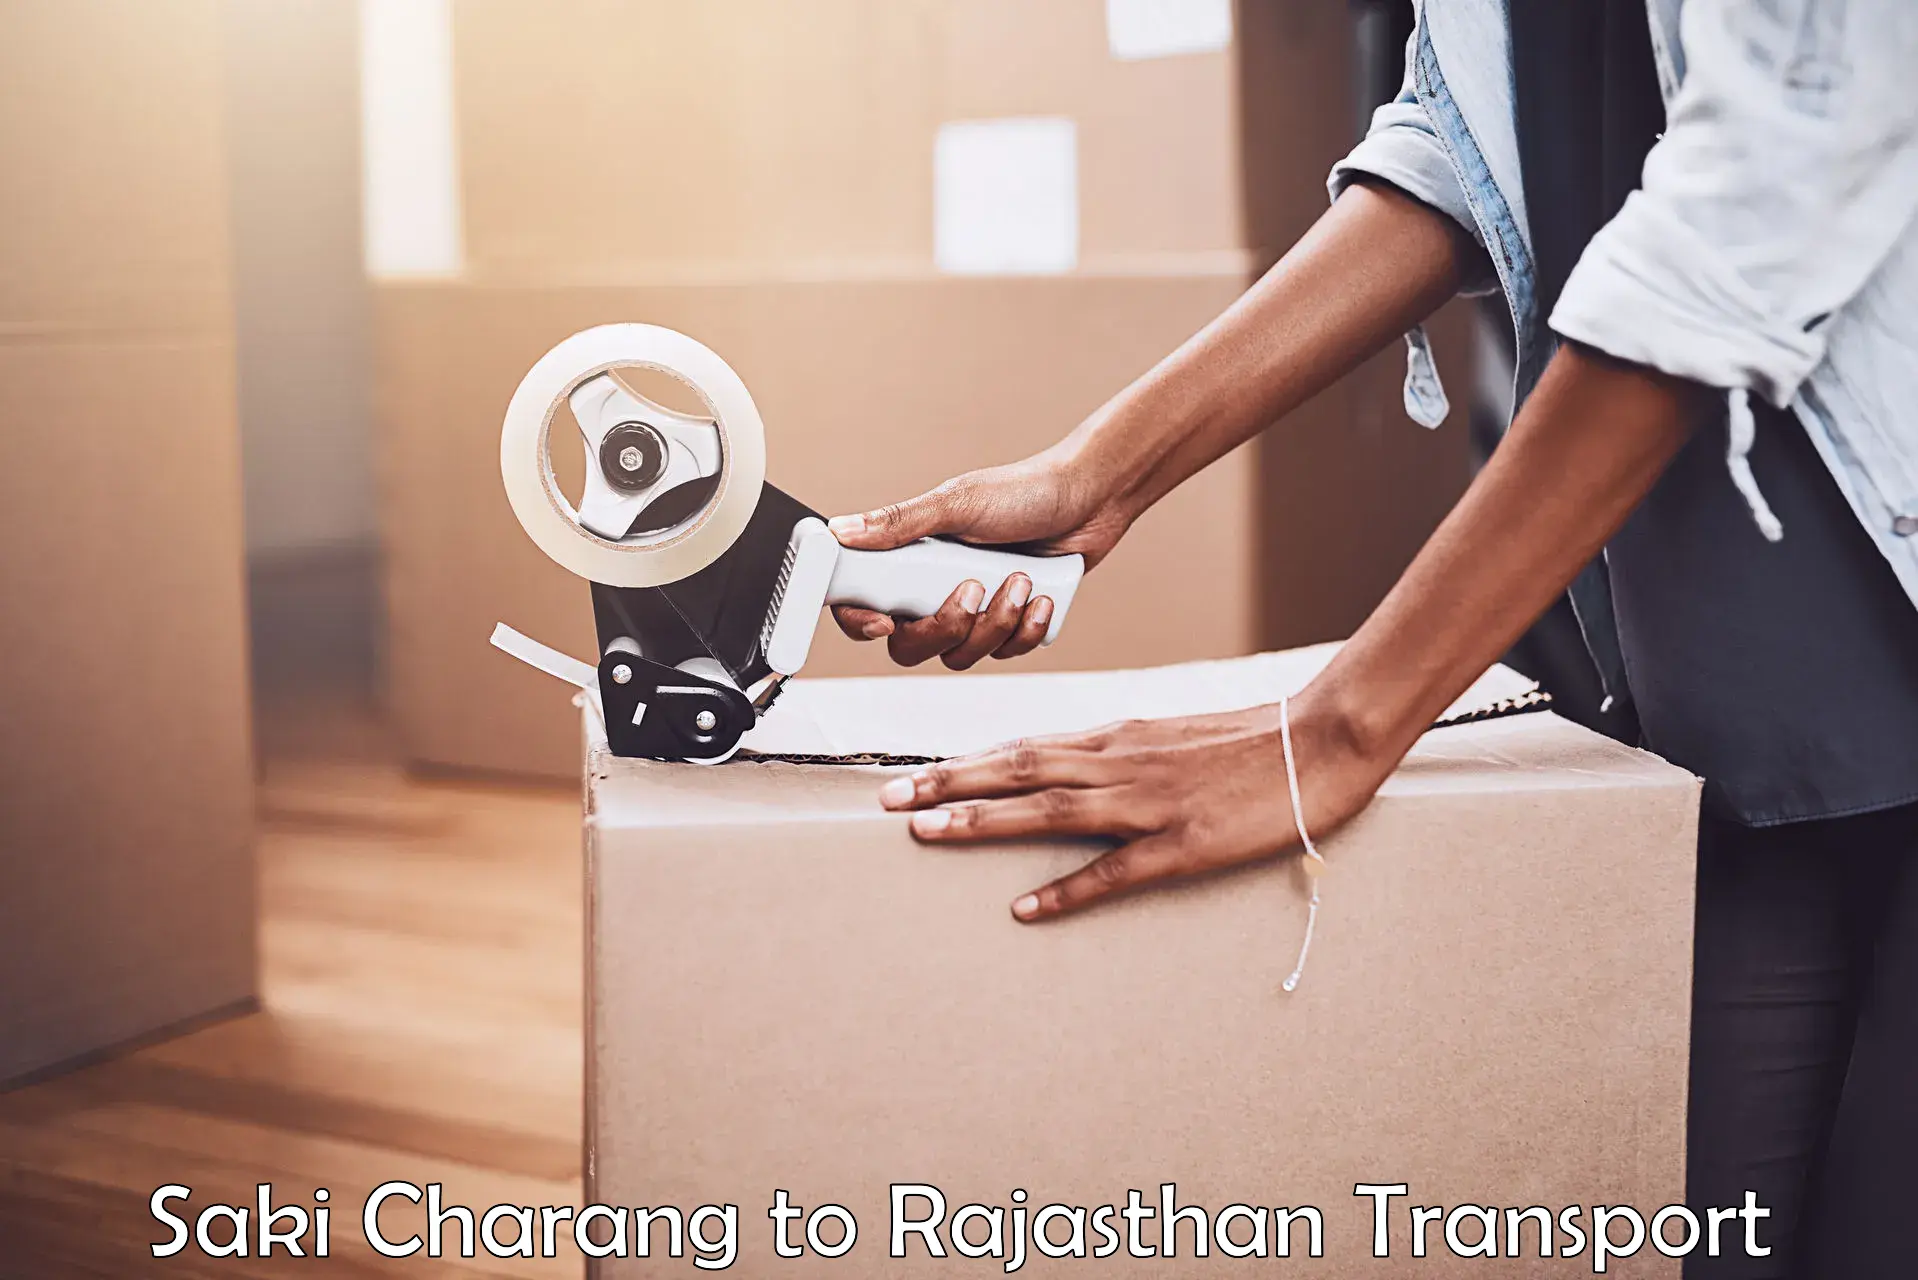 Transportation services Saki Charang to Rajgarh Rajasthan